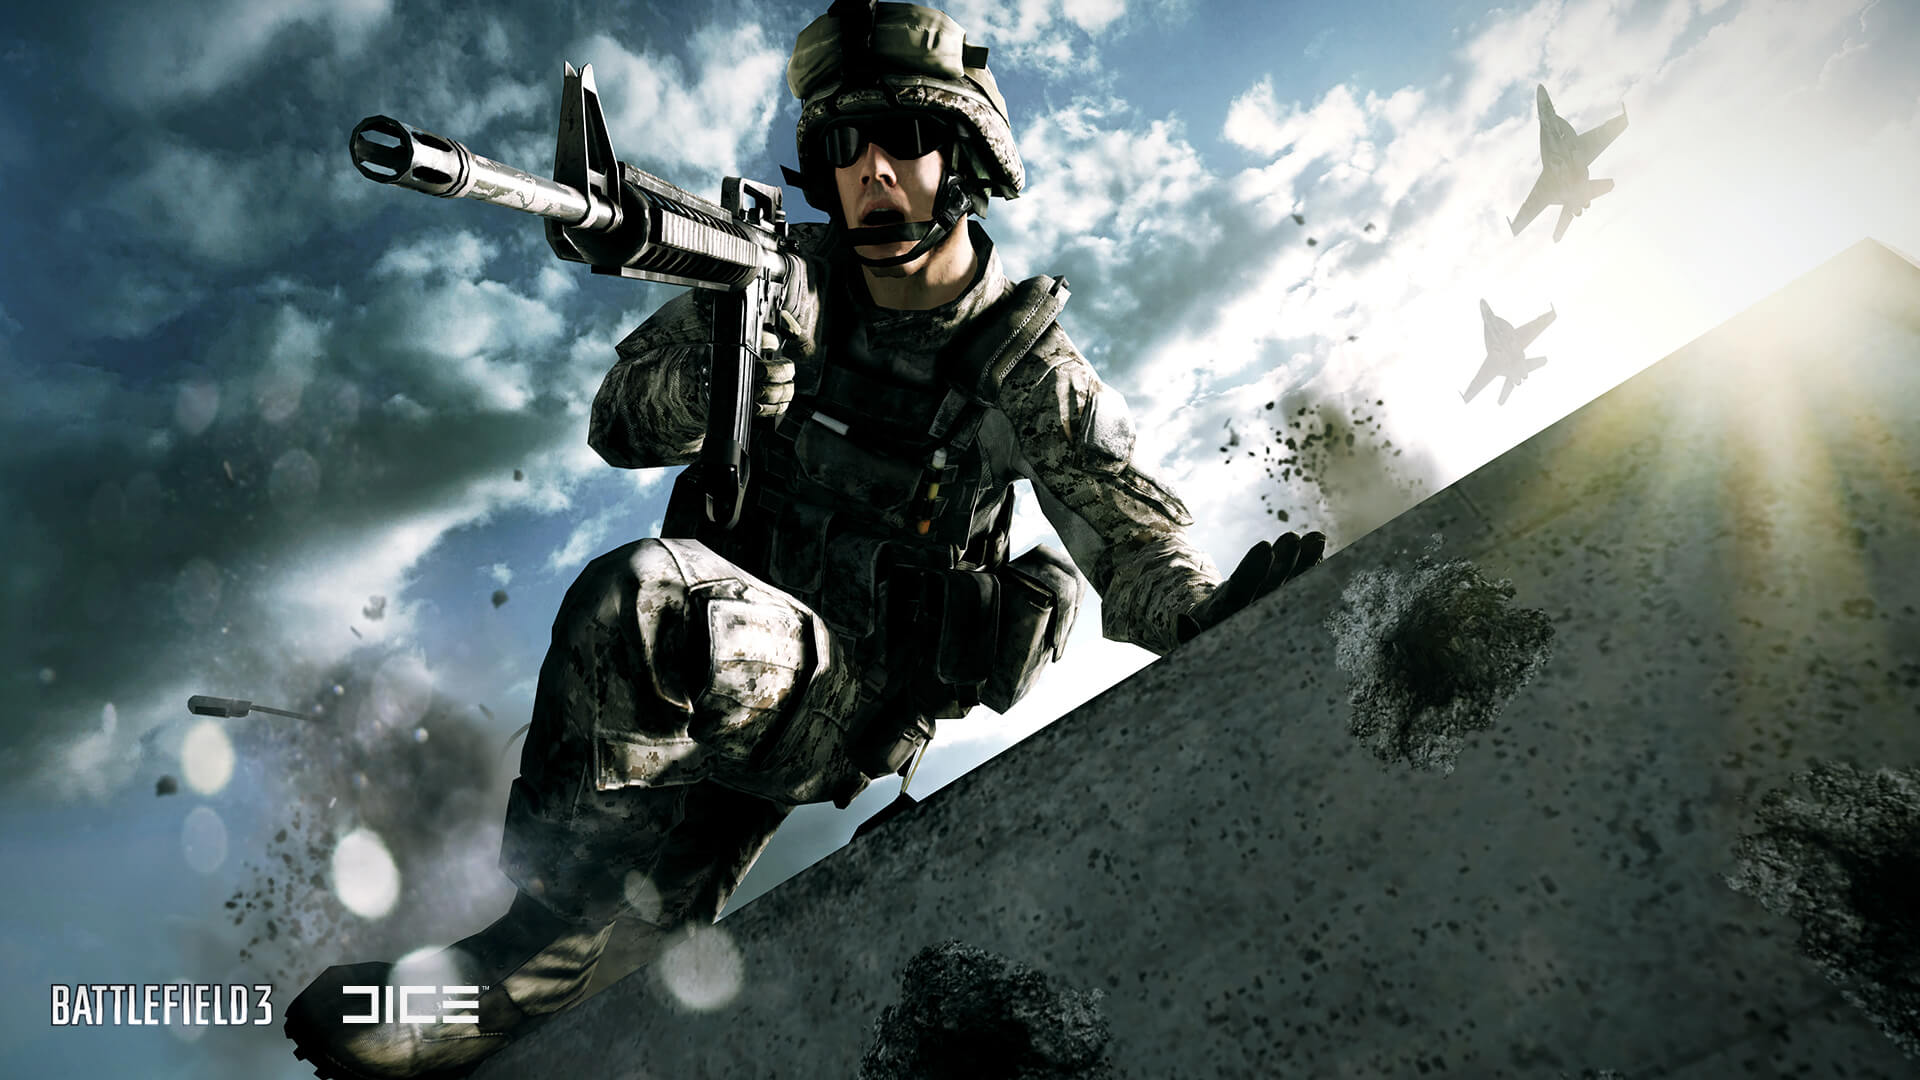 АНОНСЫ,ВИДЕО И СКРИНШОТЫ Купить аккаунт Battlefield 3 Premium + подарок на Origin-Sell.com